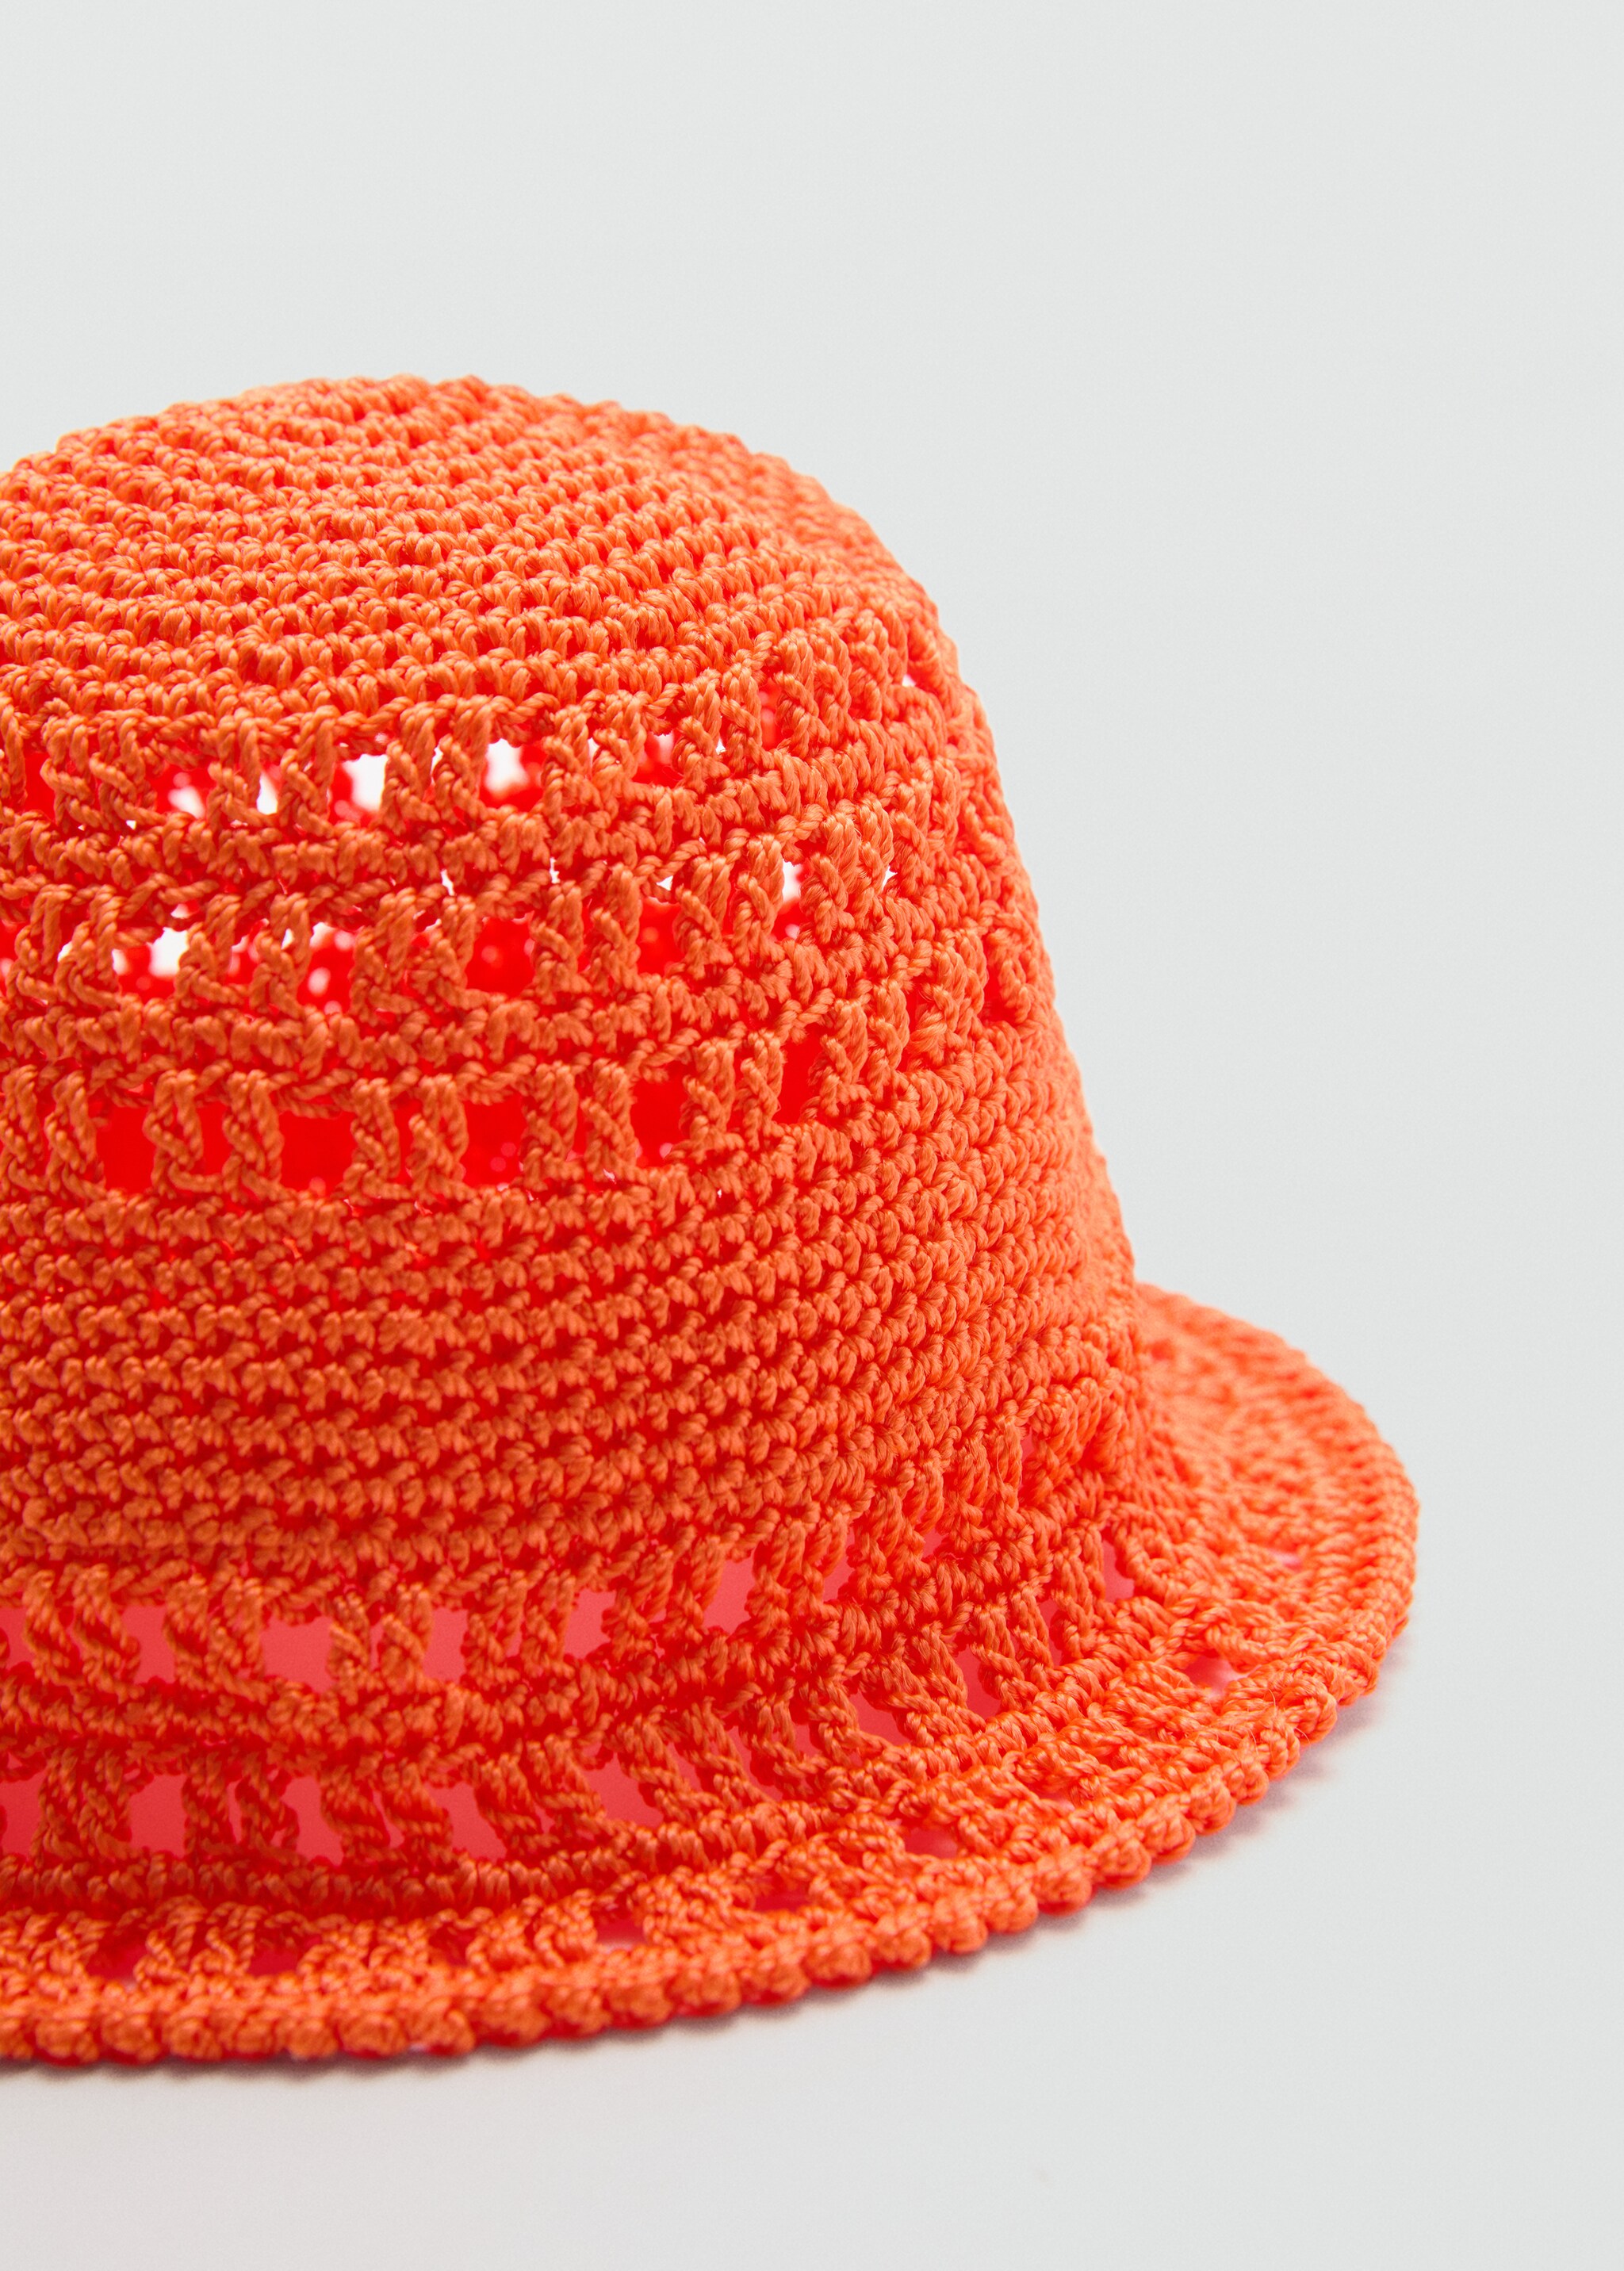 Crochet bucket hat - Medium plane